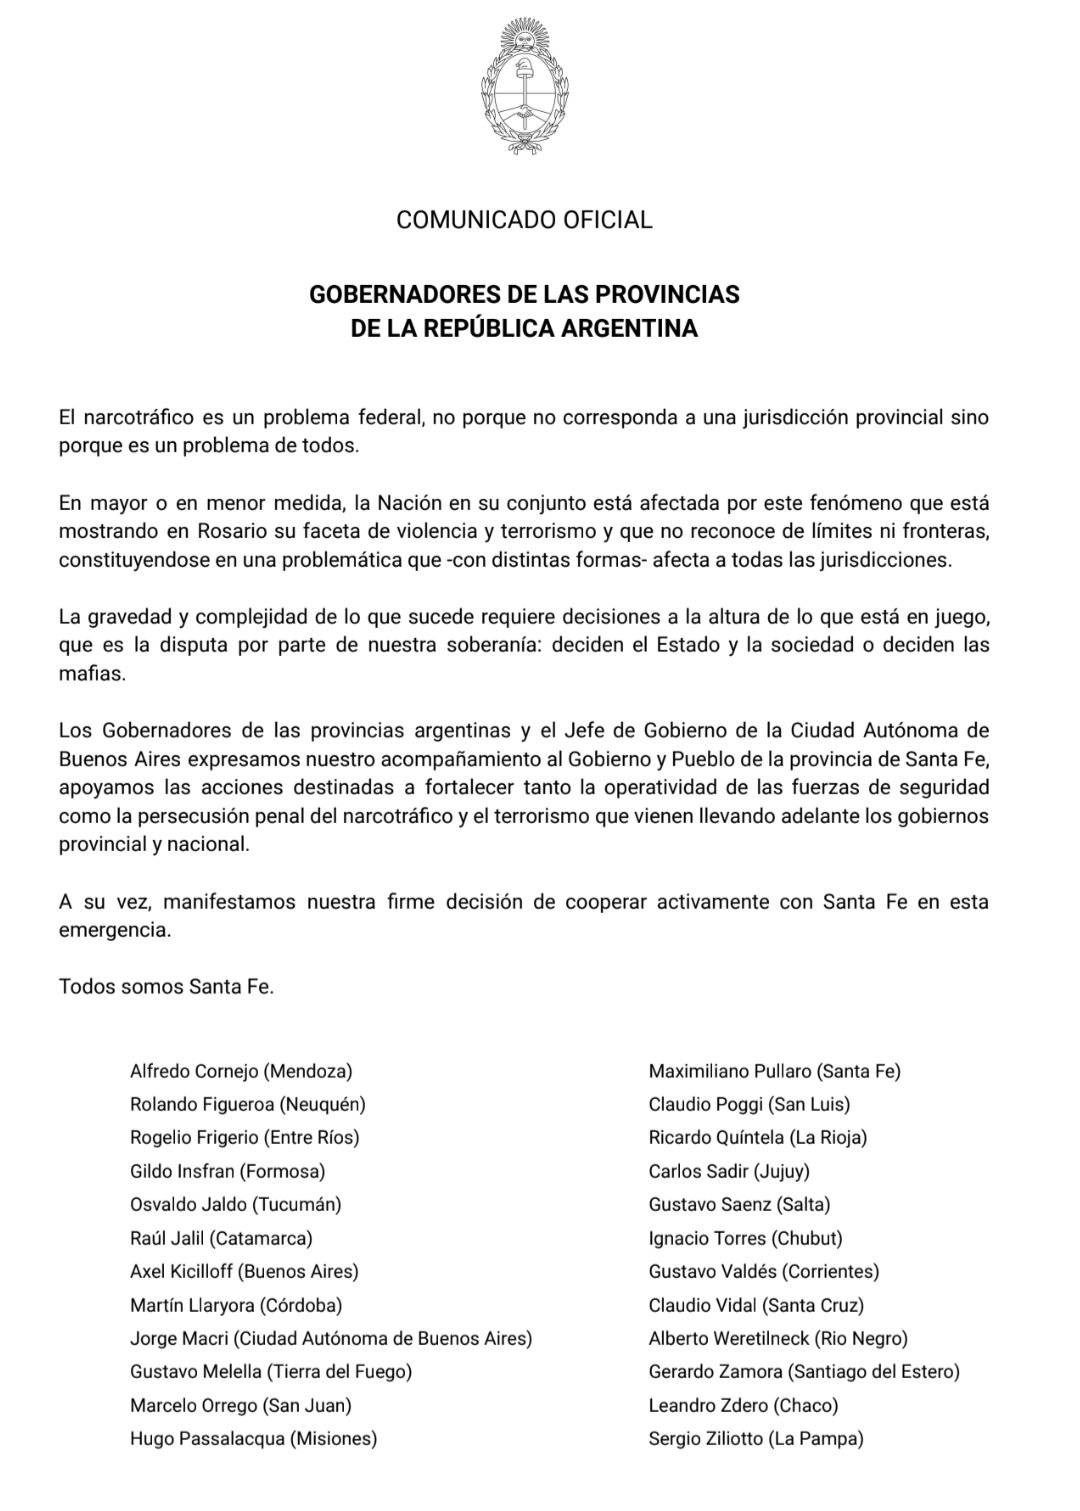 Passalacqua y otros gobernadores se solidarizaron con Santa Fe: "Los argentinos merecemos vivir en paz"